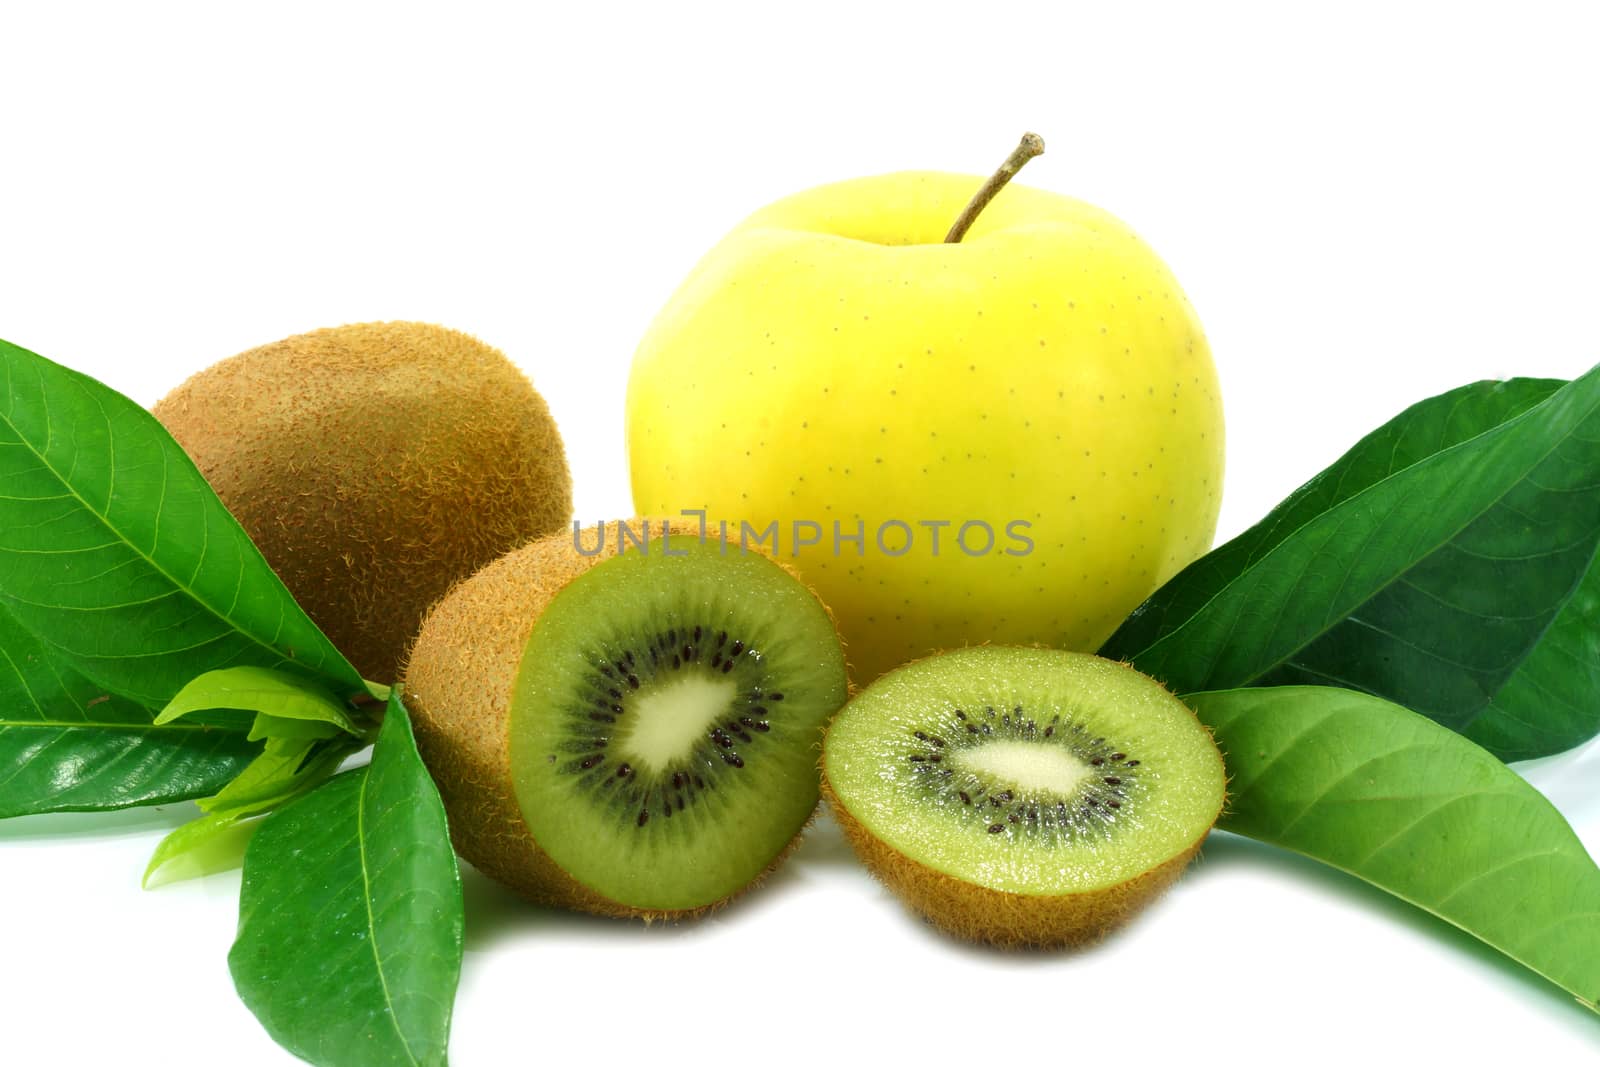 kiwi fruit and yellow apple isolated on white background